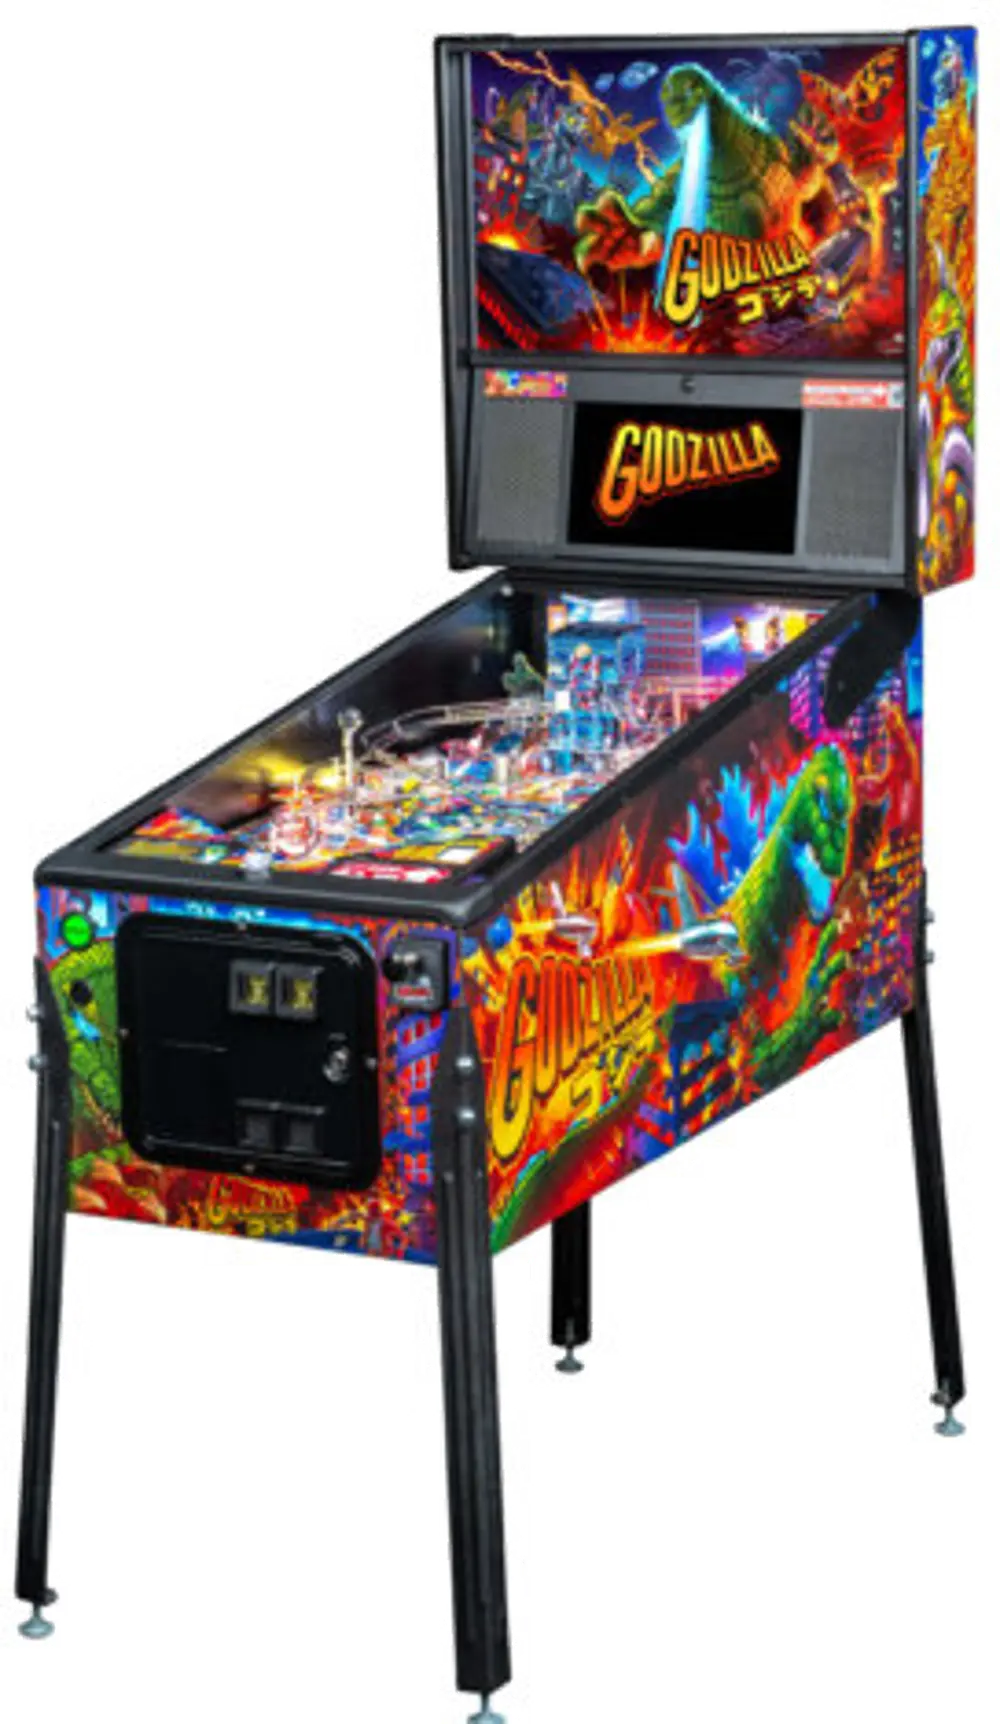 500-55T5-01 Stern Pinball Godzilla Pro Pinball Machine-1